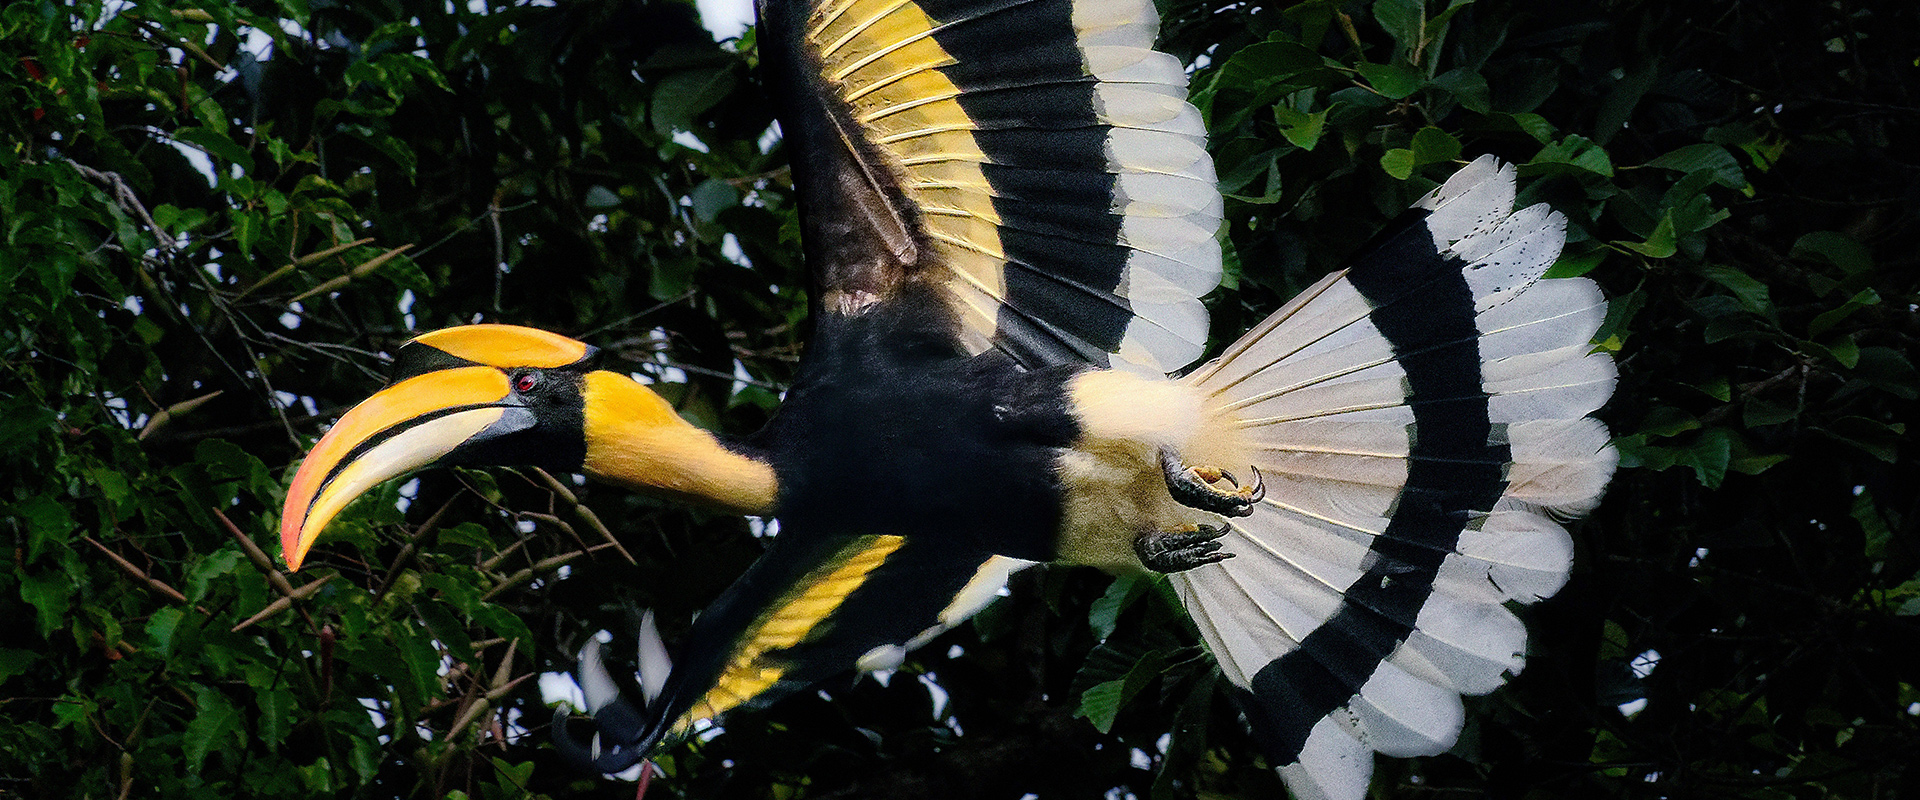 Great Hornbill in flight © Eric Martin